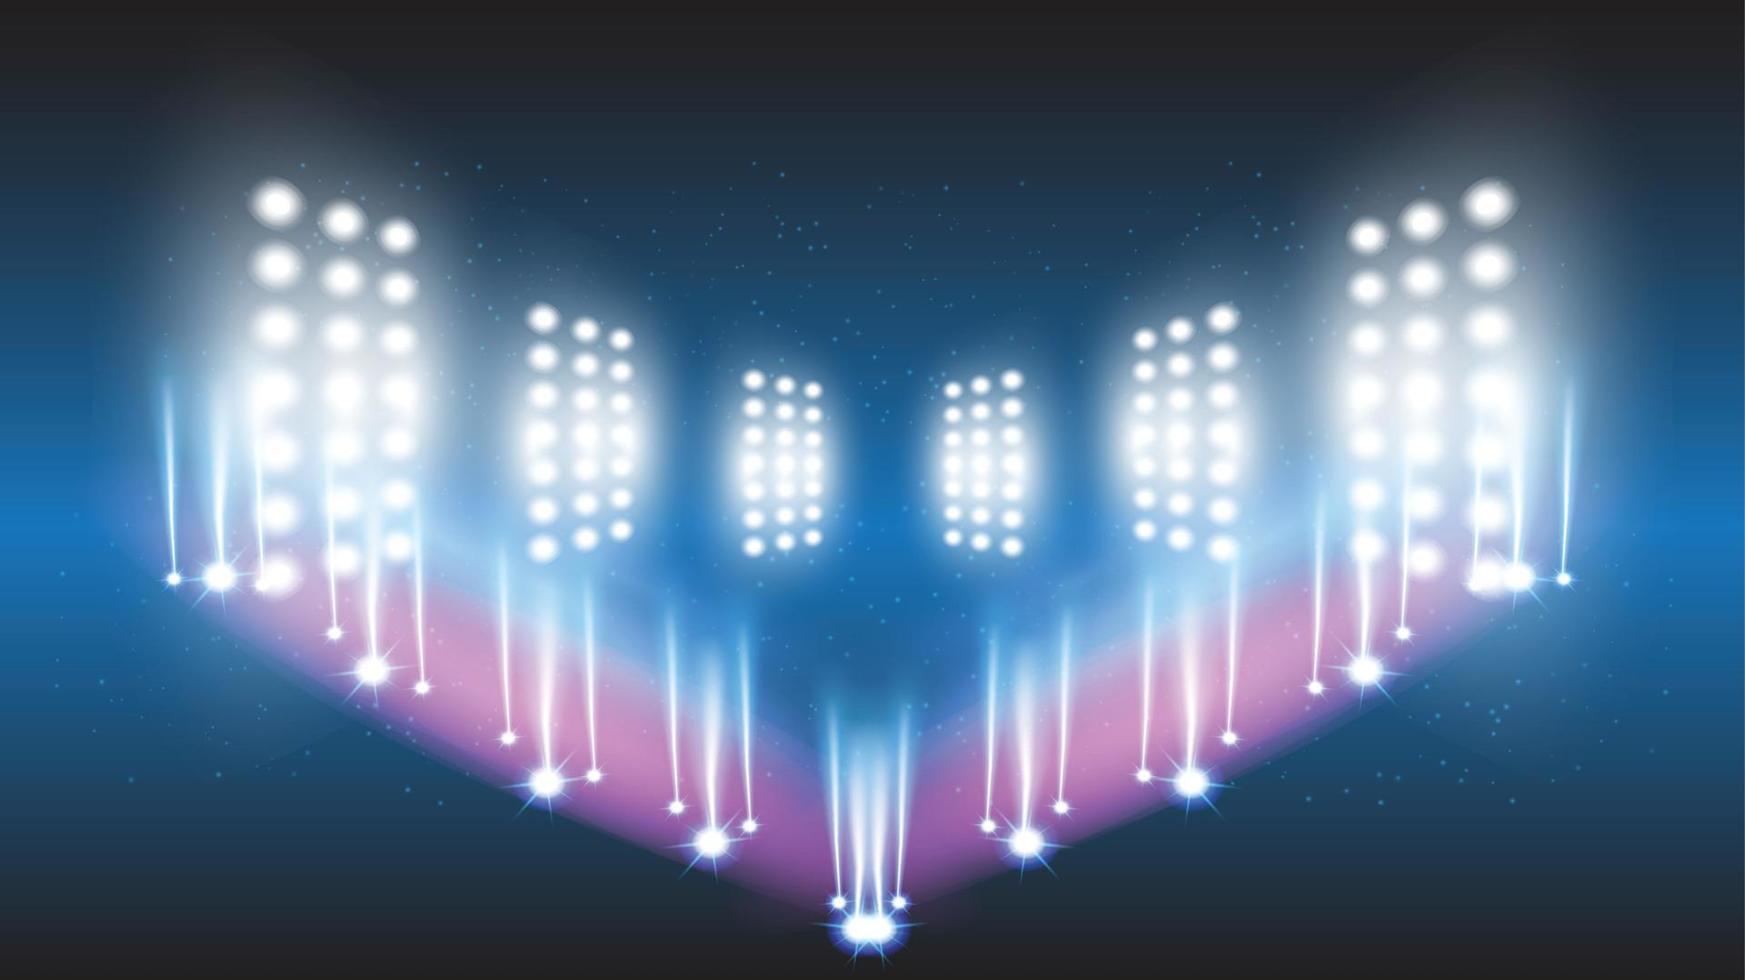 fond de technologie abstraite salle de scène de stade avec des lumières scéniques de l'interface utilisateur de technologie futuriste ronde vecteur bleu éclairage fond de projecteur de scène vide.